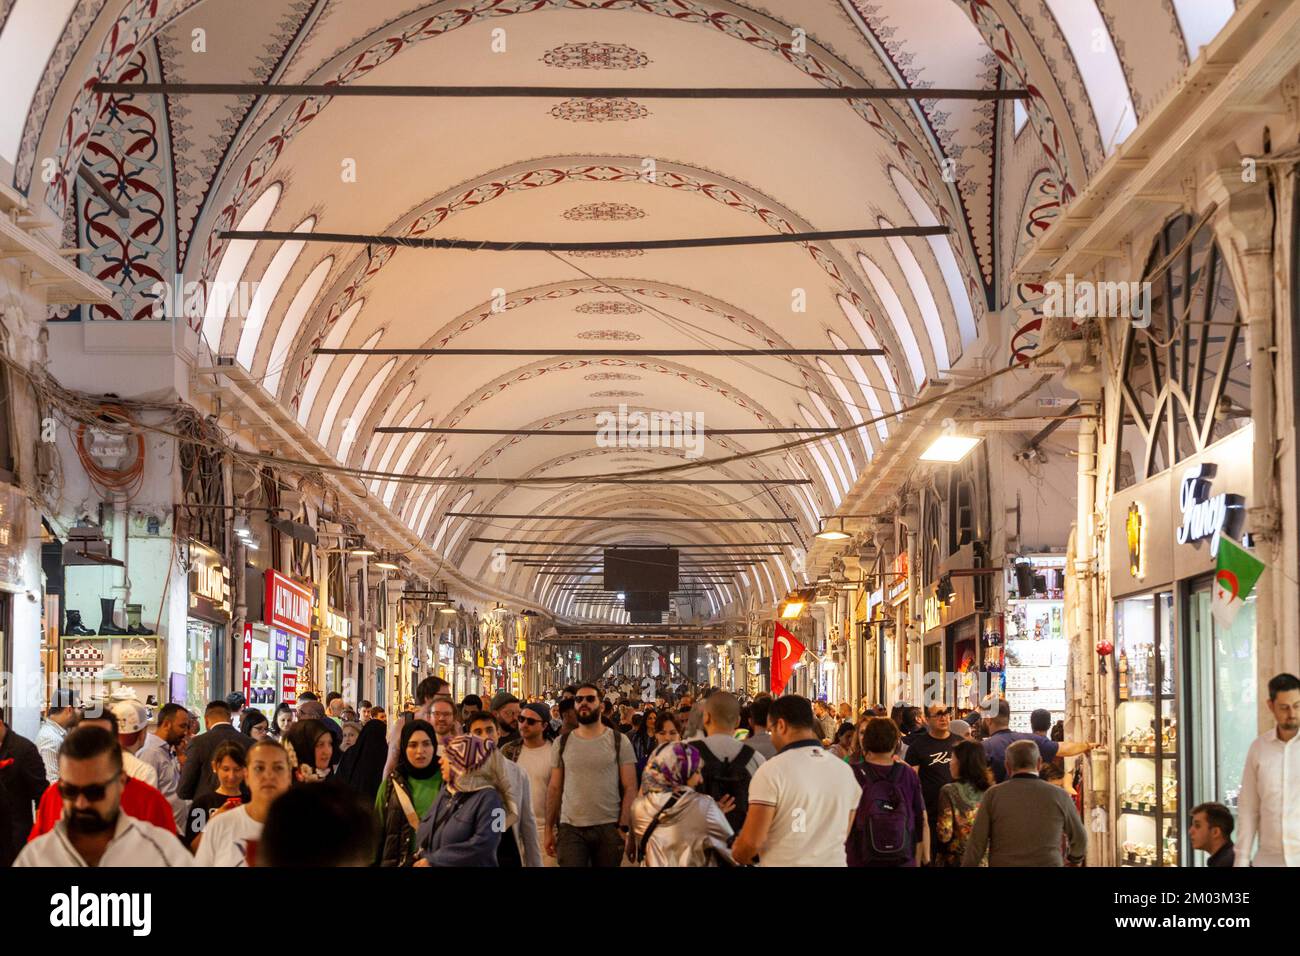 Imagen de una multitud de personas que trabajan en el gran bazar Kapalicarsi de estambul. El Gran Bazar de Estambul es uno de los más grandes y antiguos marke cubiertos Foto de stock